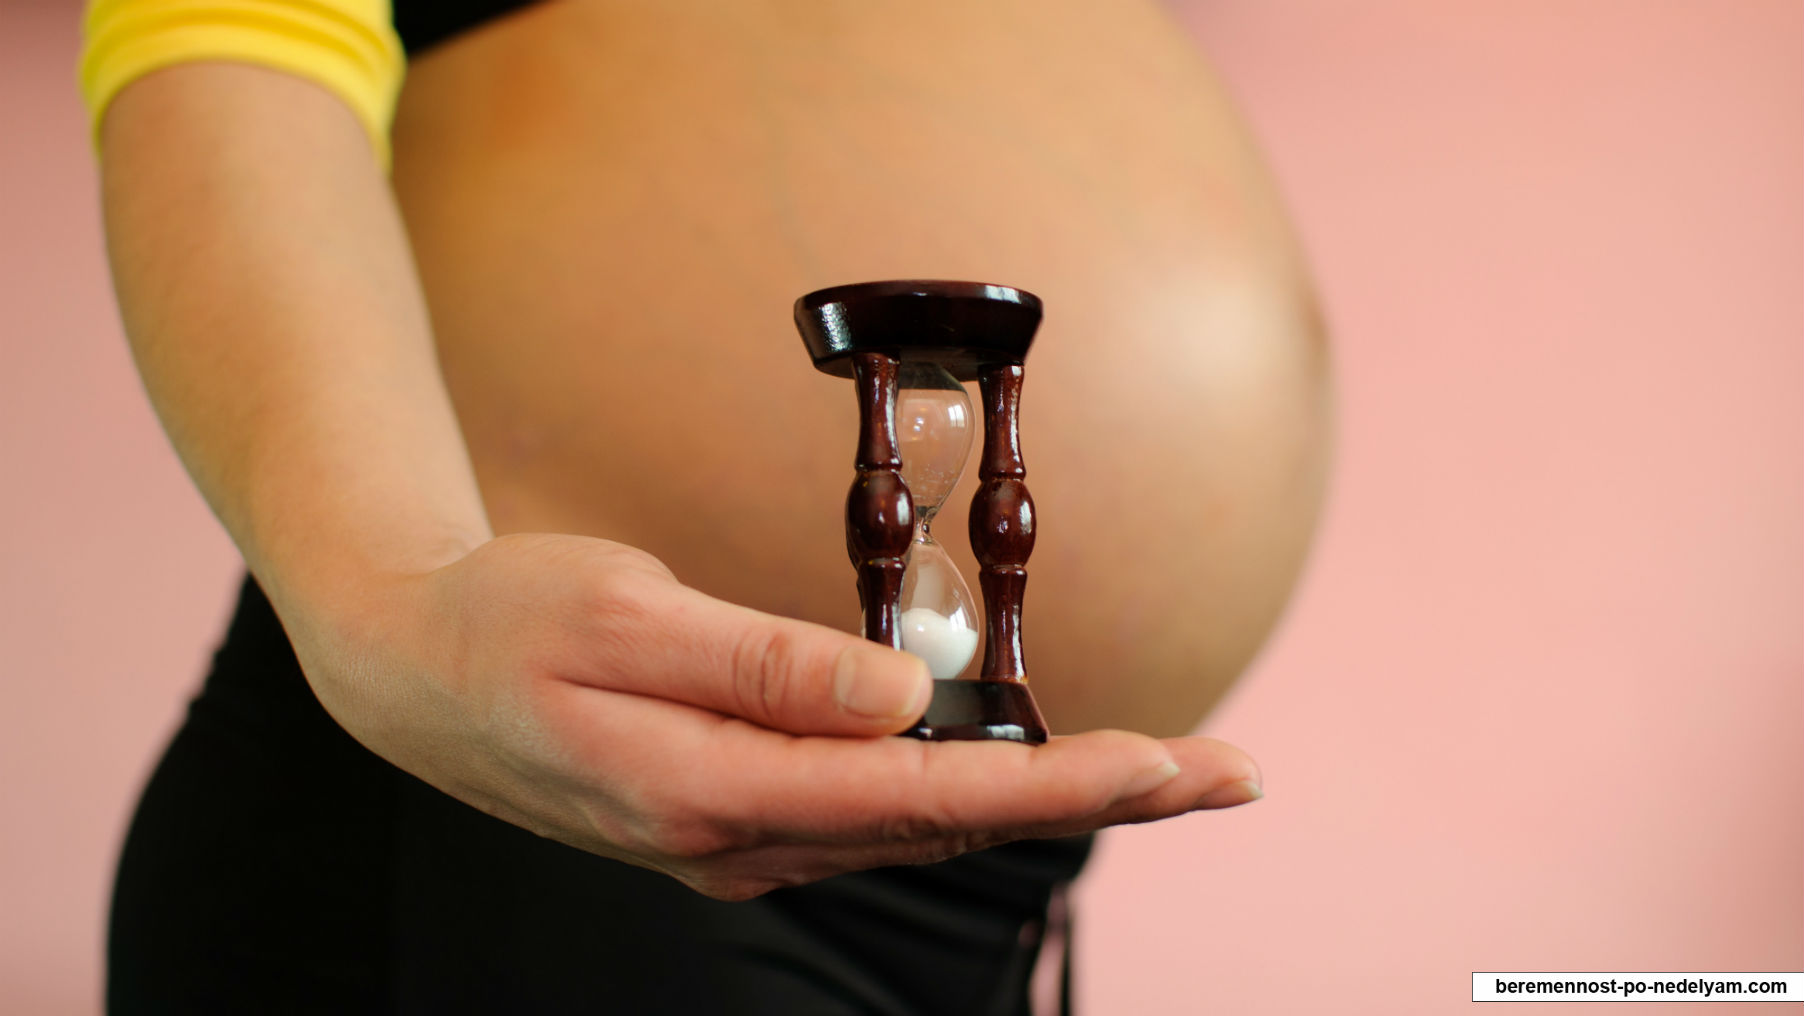 Противопоказания для беременности после 40 лет